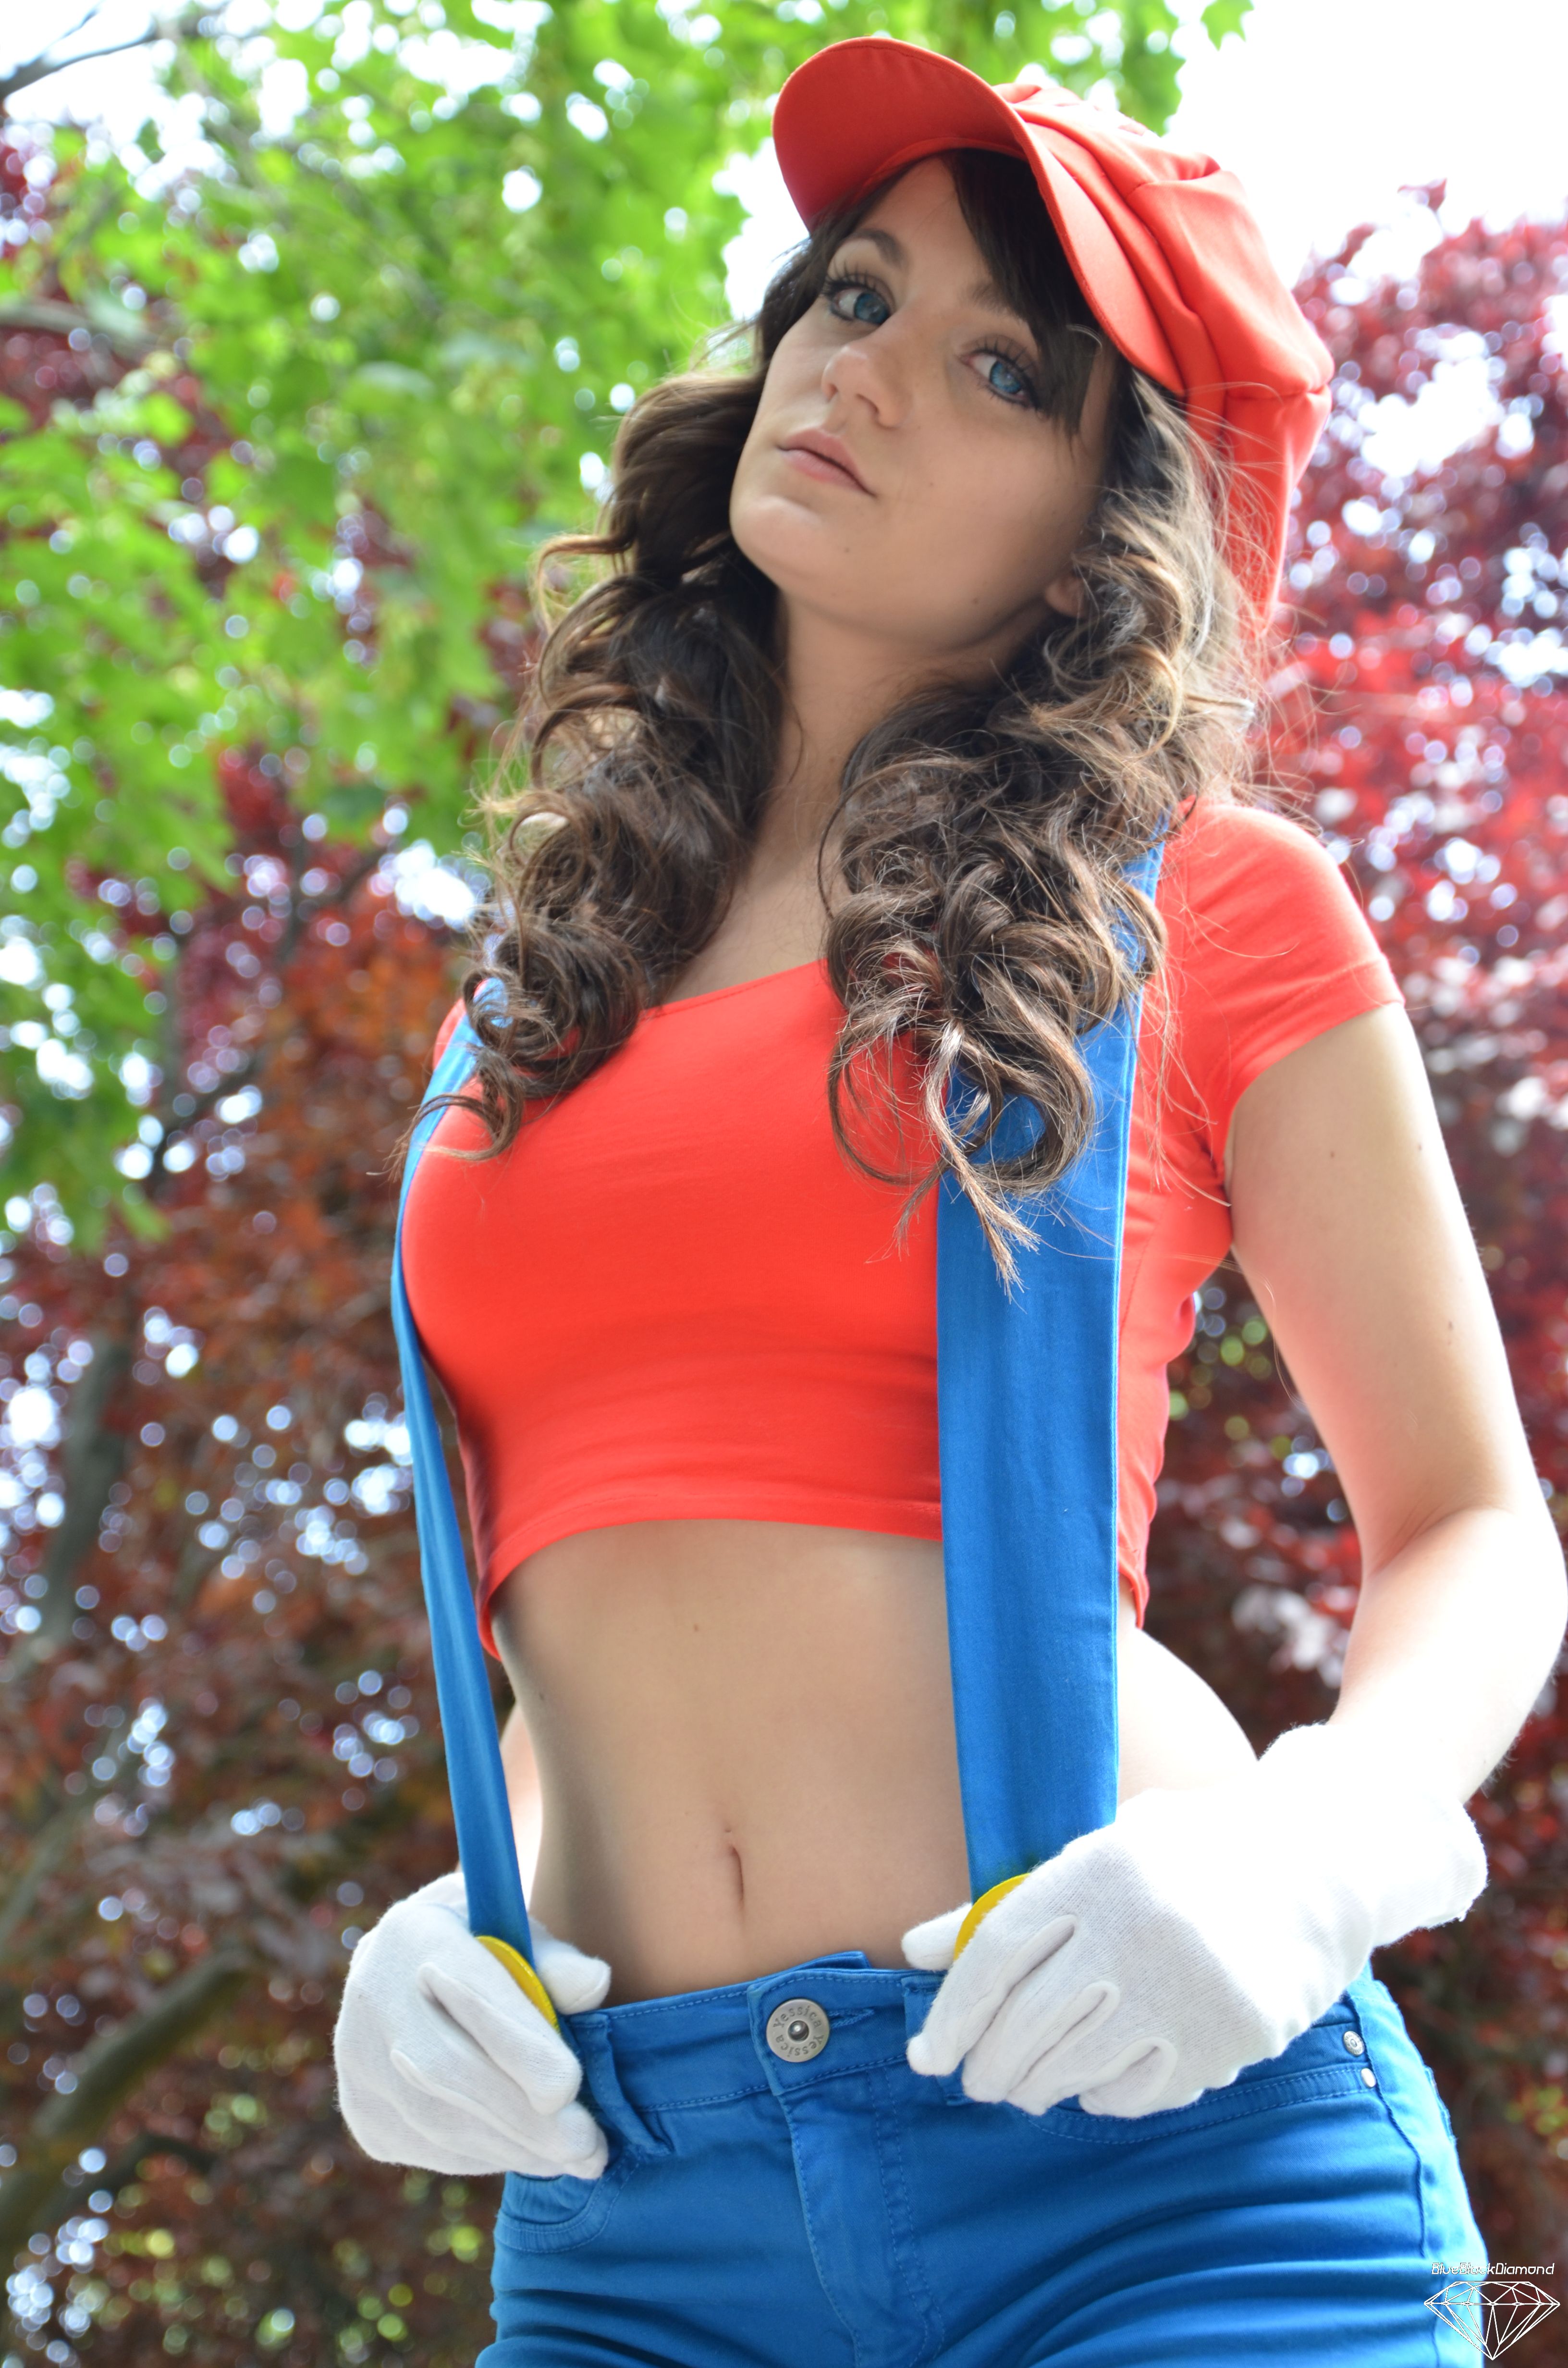 Super Mario Girl!